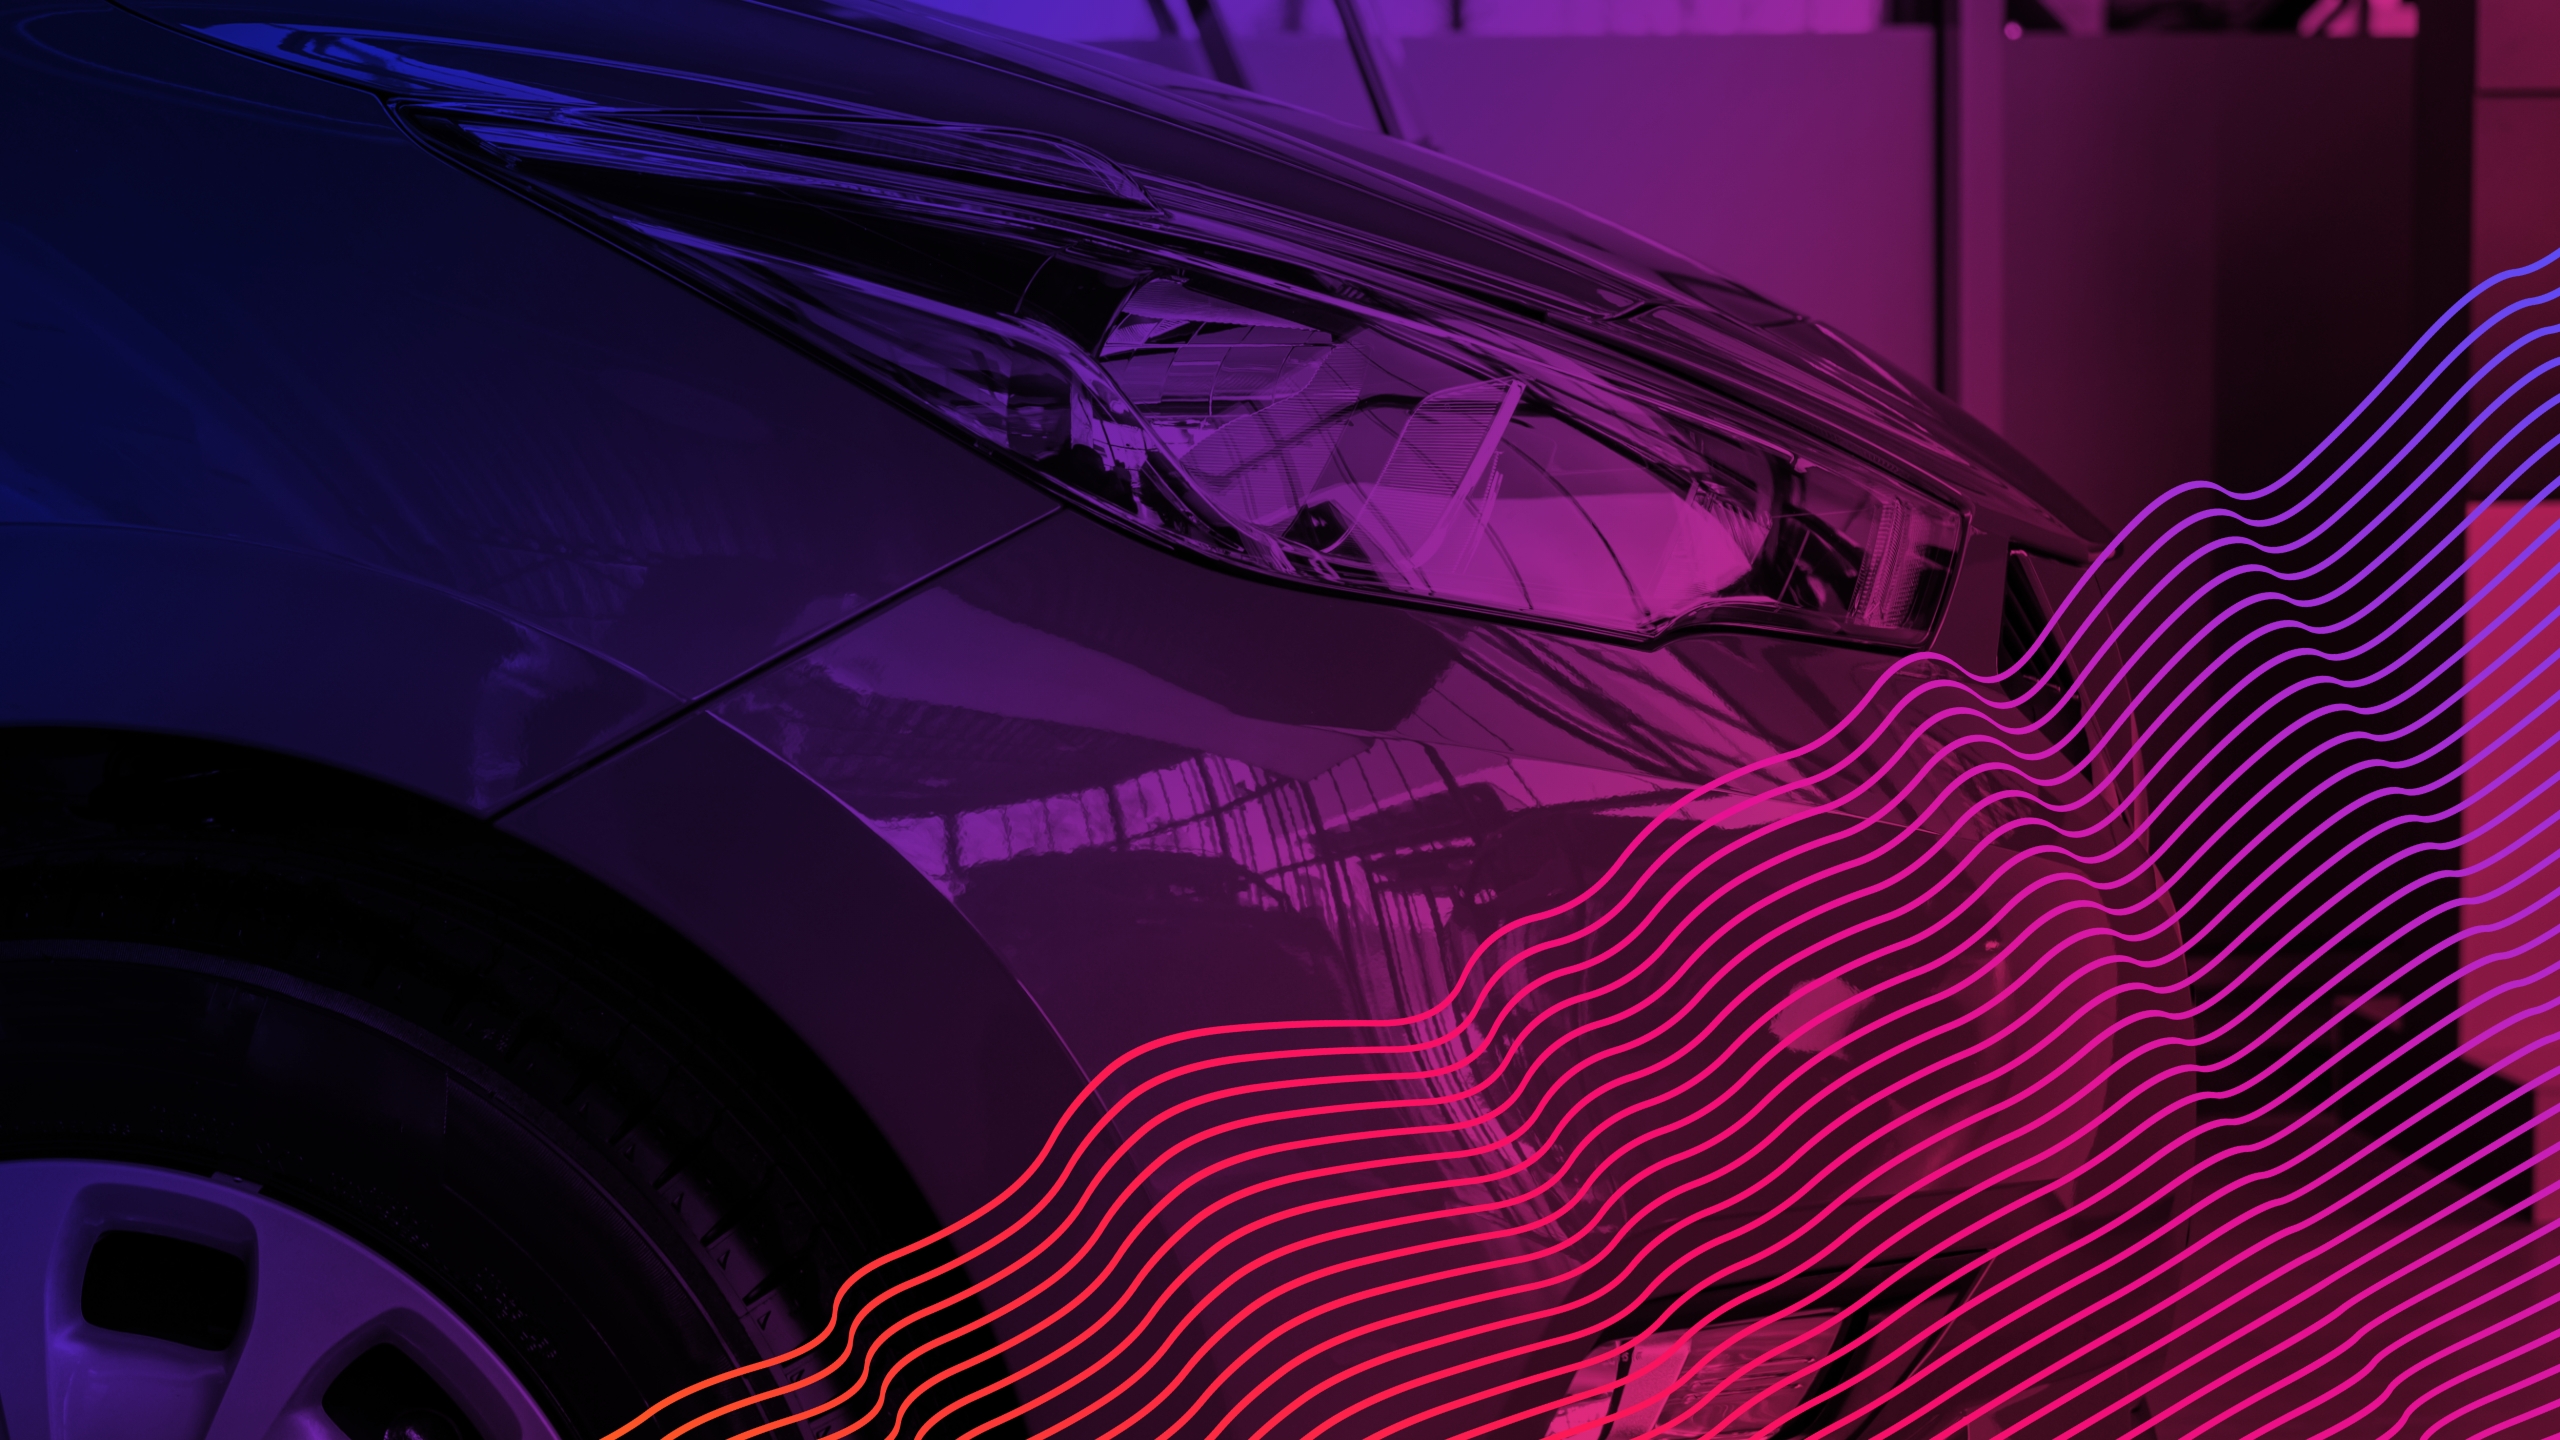 L'avant d'une voiture avec une superposition violette sur l'image